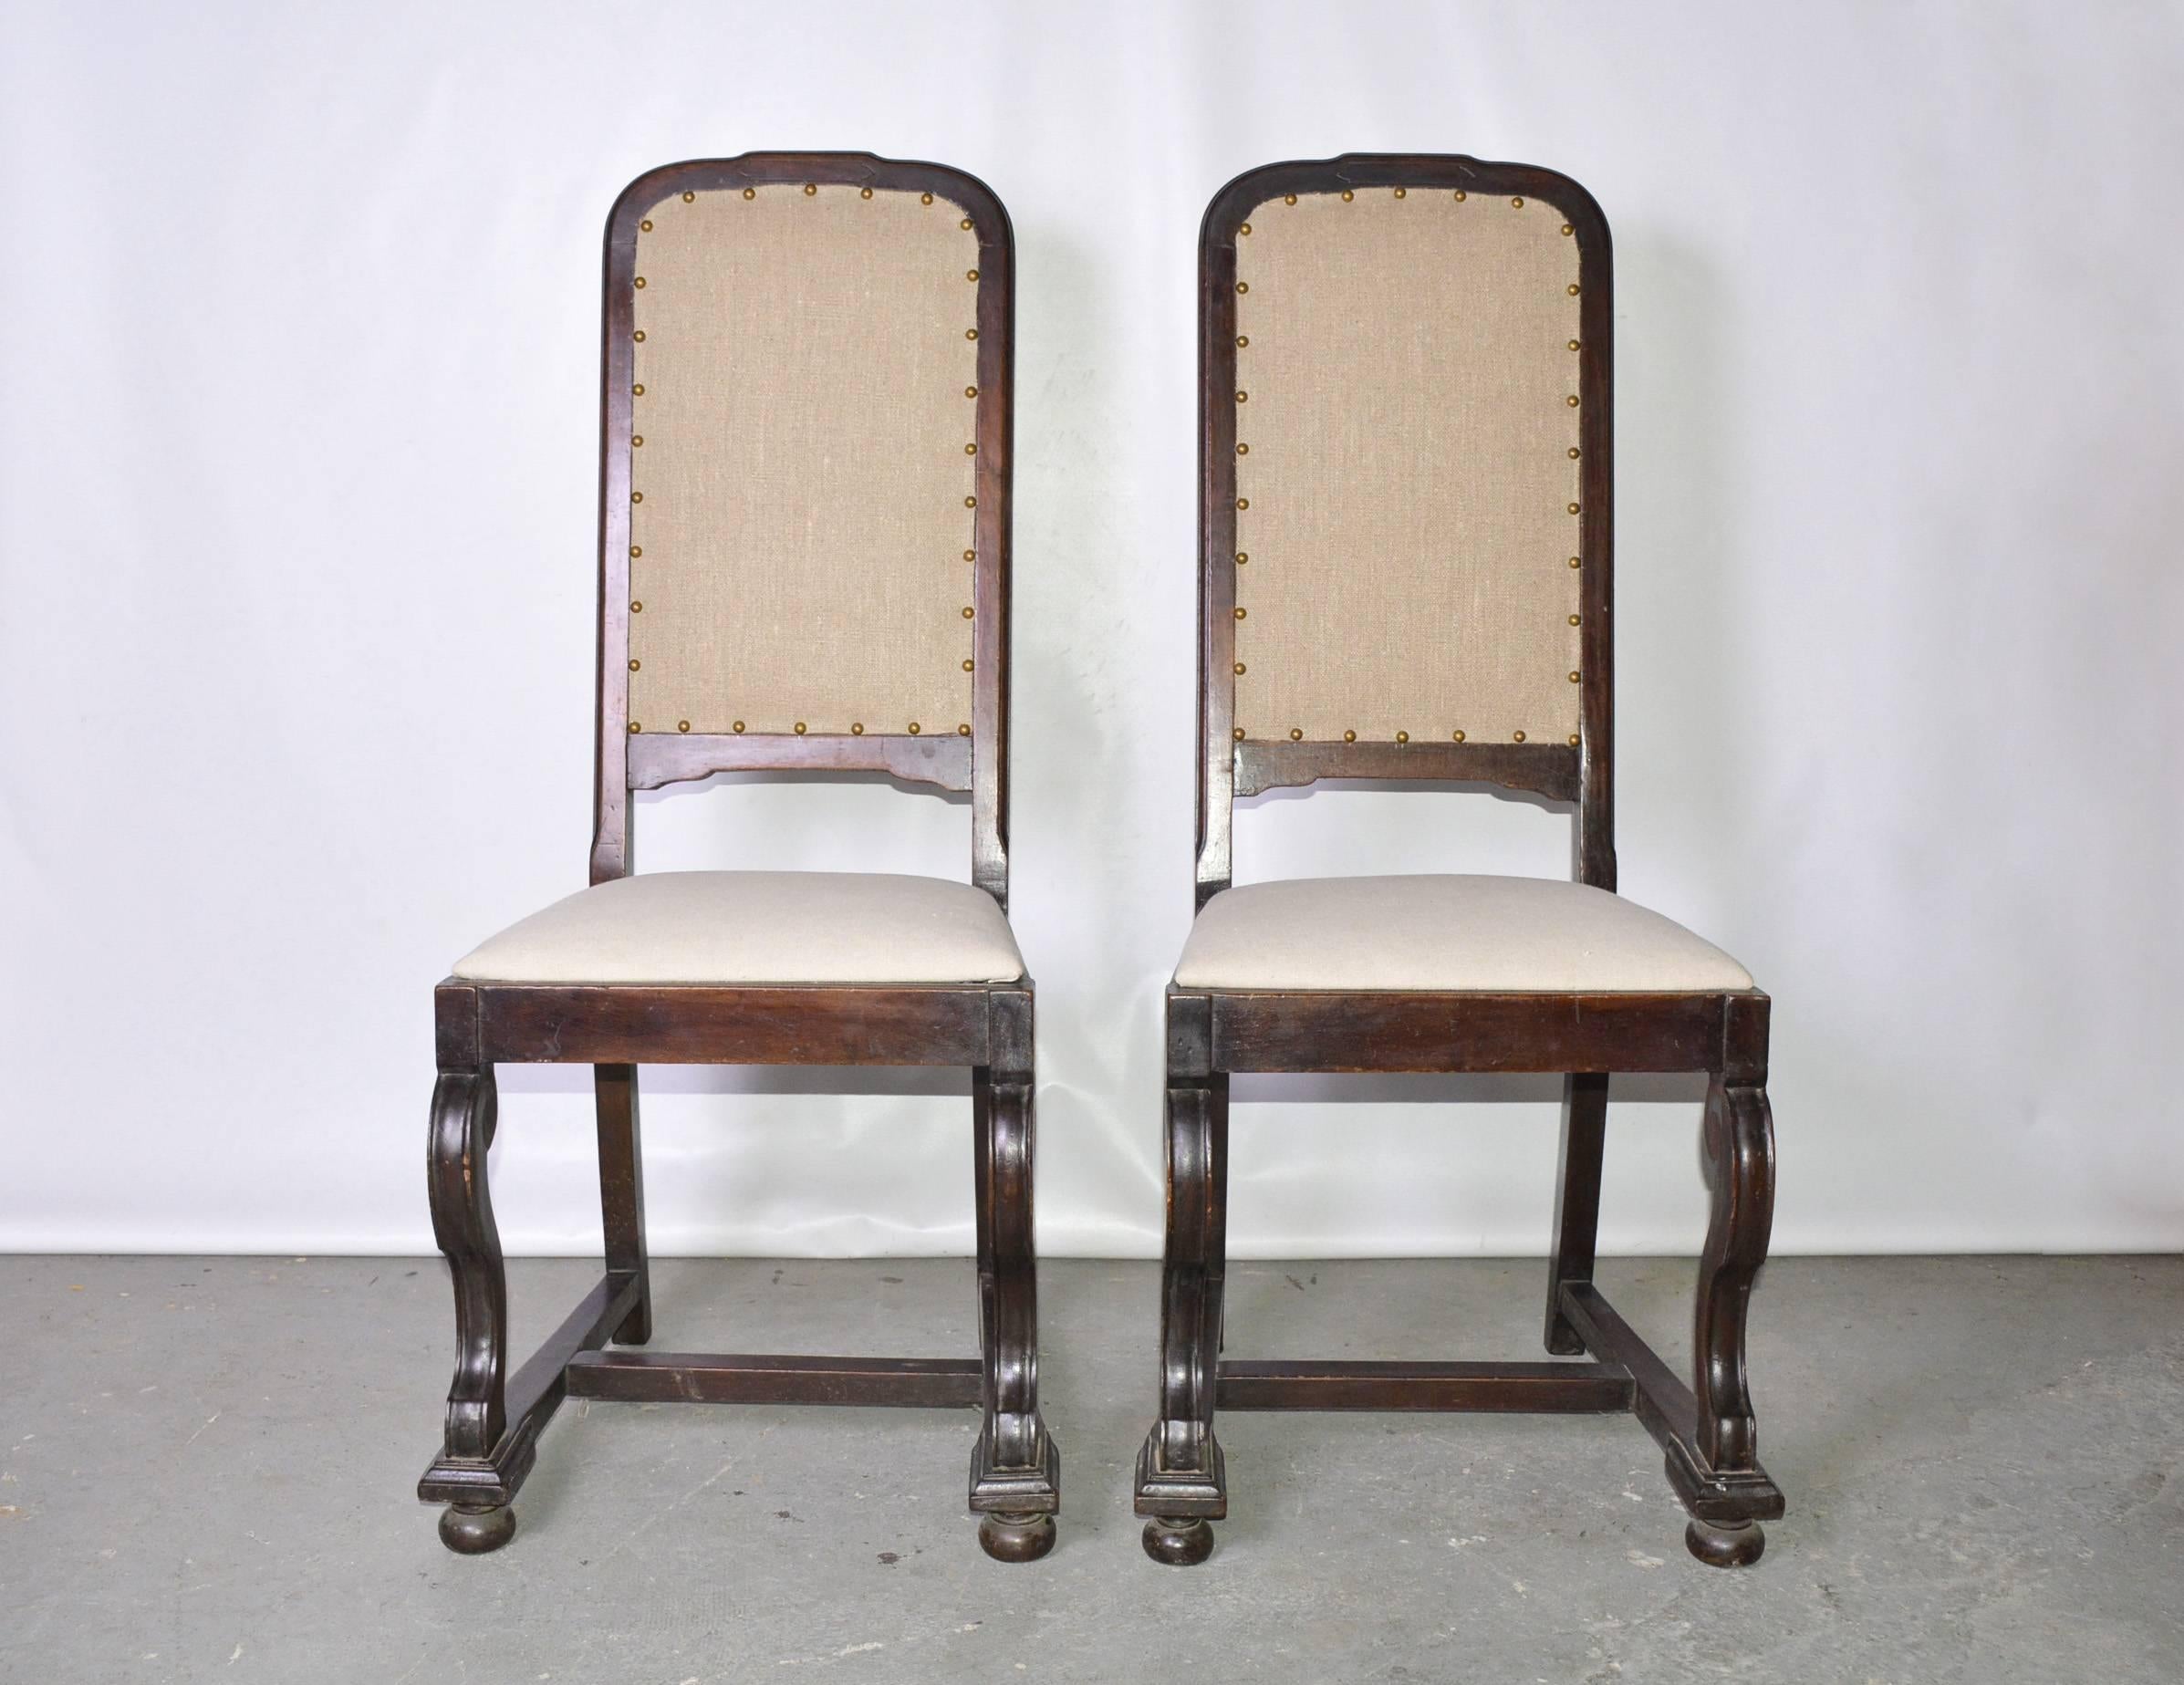 La paire d'antiques chaises latérales de style jacobéen en acajou est nouvellement tapissée d'une nuance de lin beige tandis que les sièges sont recouverts d'une autre nuance complémentaire de lin beige.